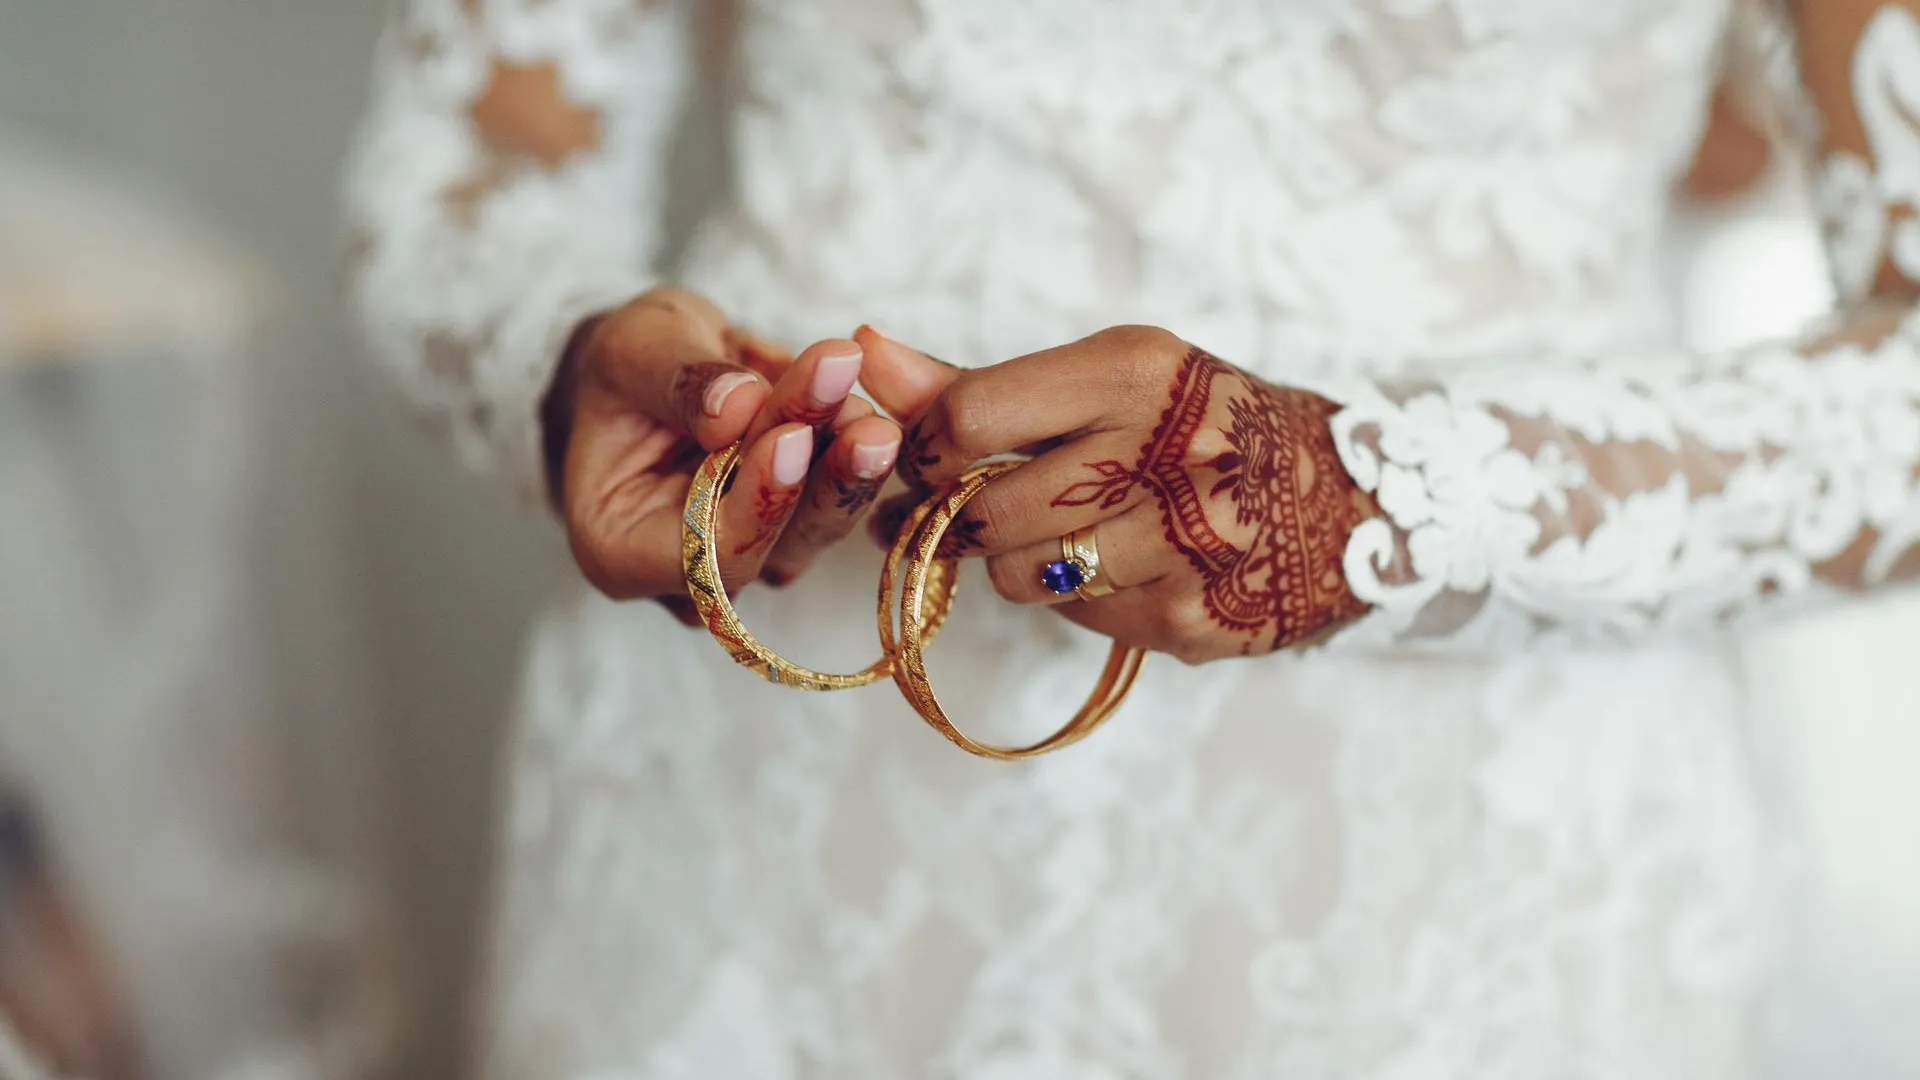 От Казахстана до Нигерии: осенью и зимой в Реутове зарегистрировали 150 браков с иностранцами